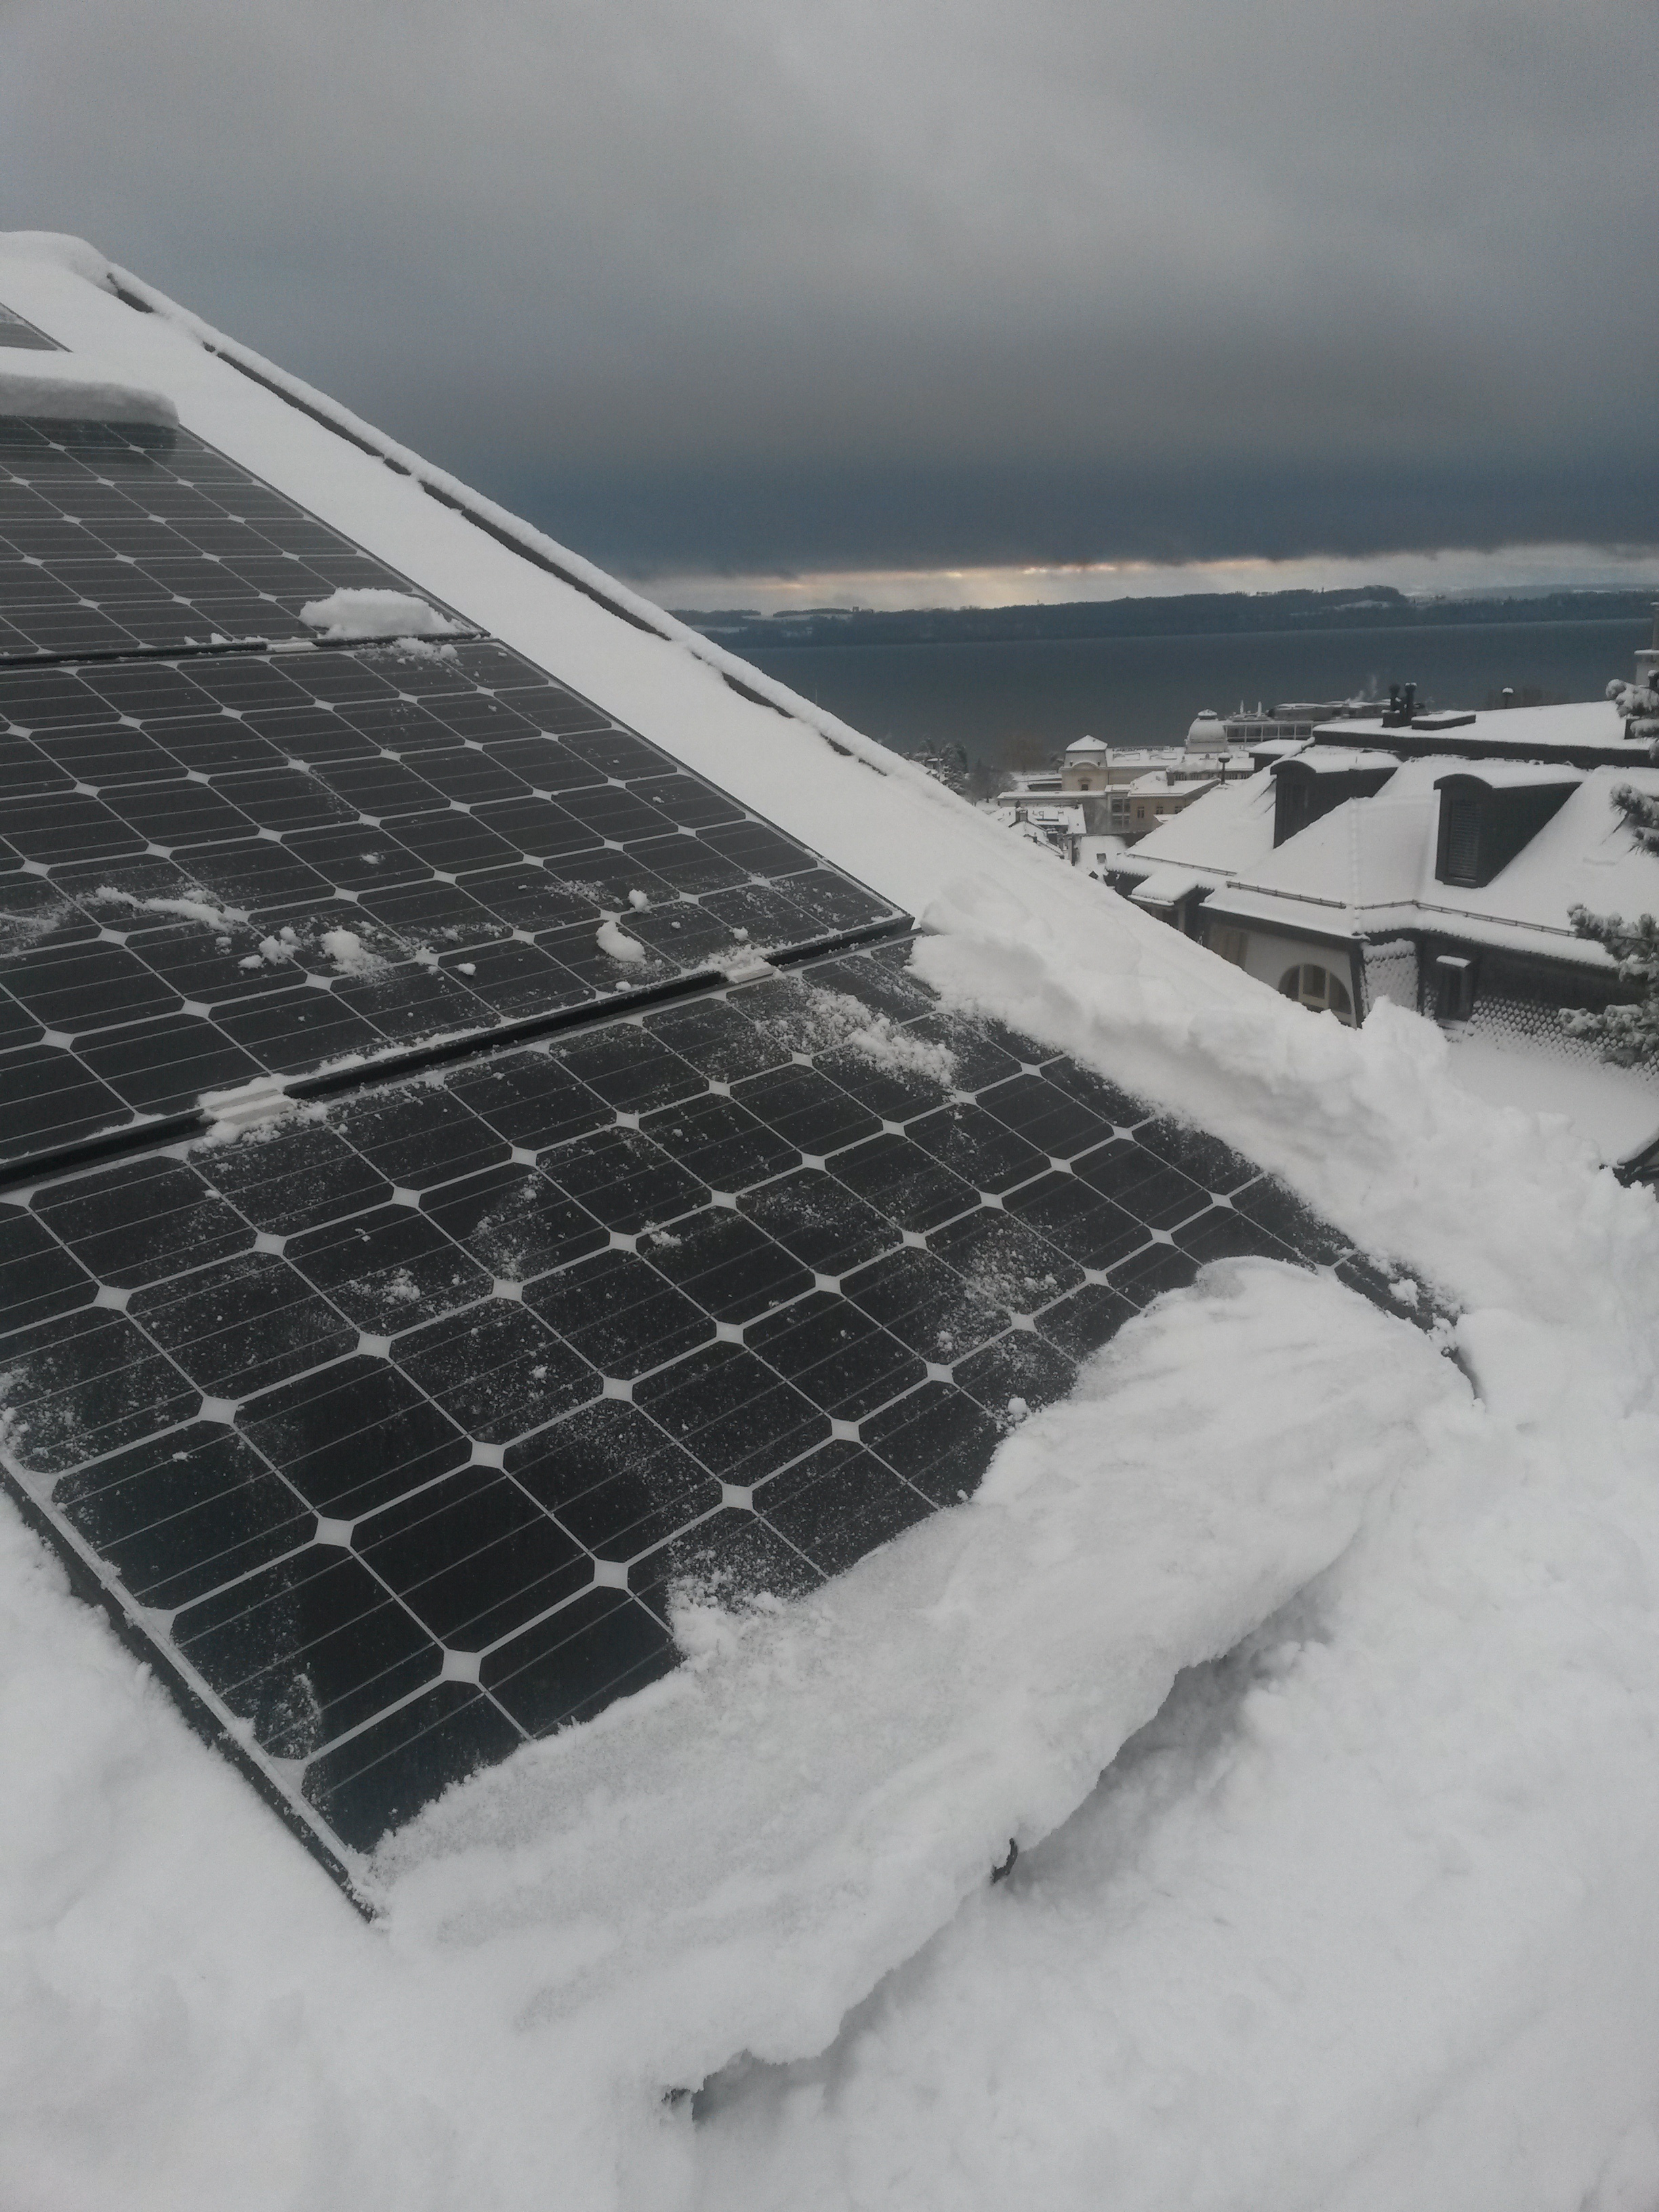 Schnee von PV-Anlage räumen? - Photovoltaik - forumE